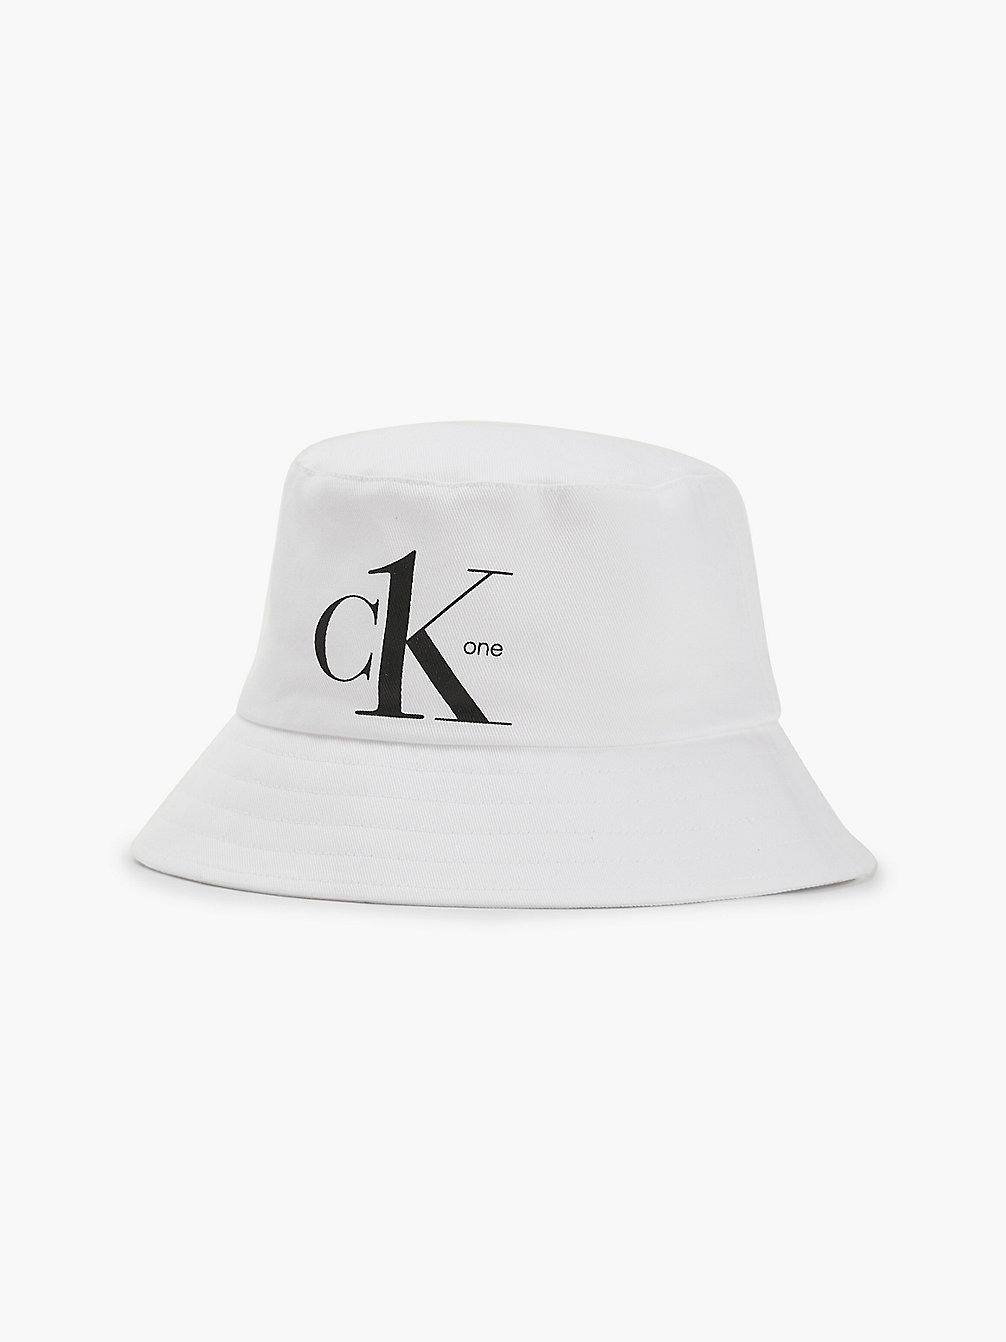 PVH CLASSIC WHITE Bucket Hat Aus Bio-Baumwolle Für Kinder undefined kids unisex Calvin Klein